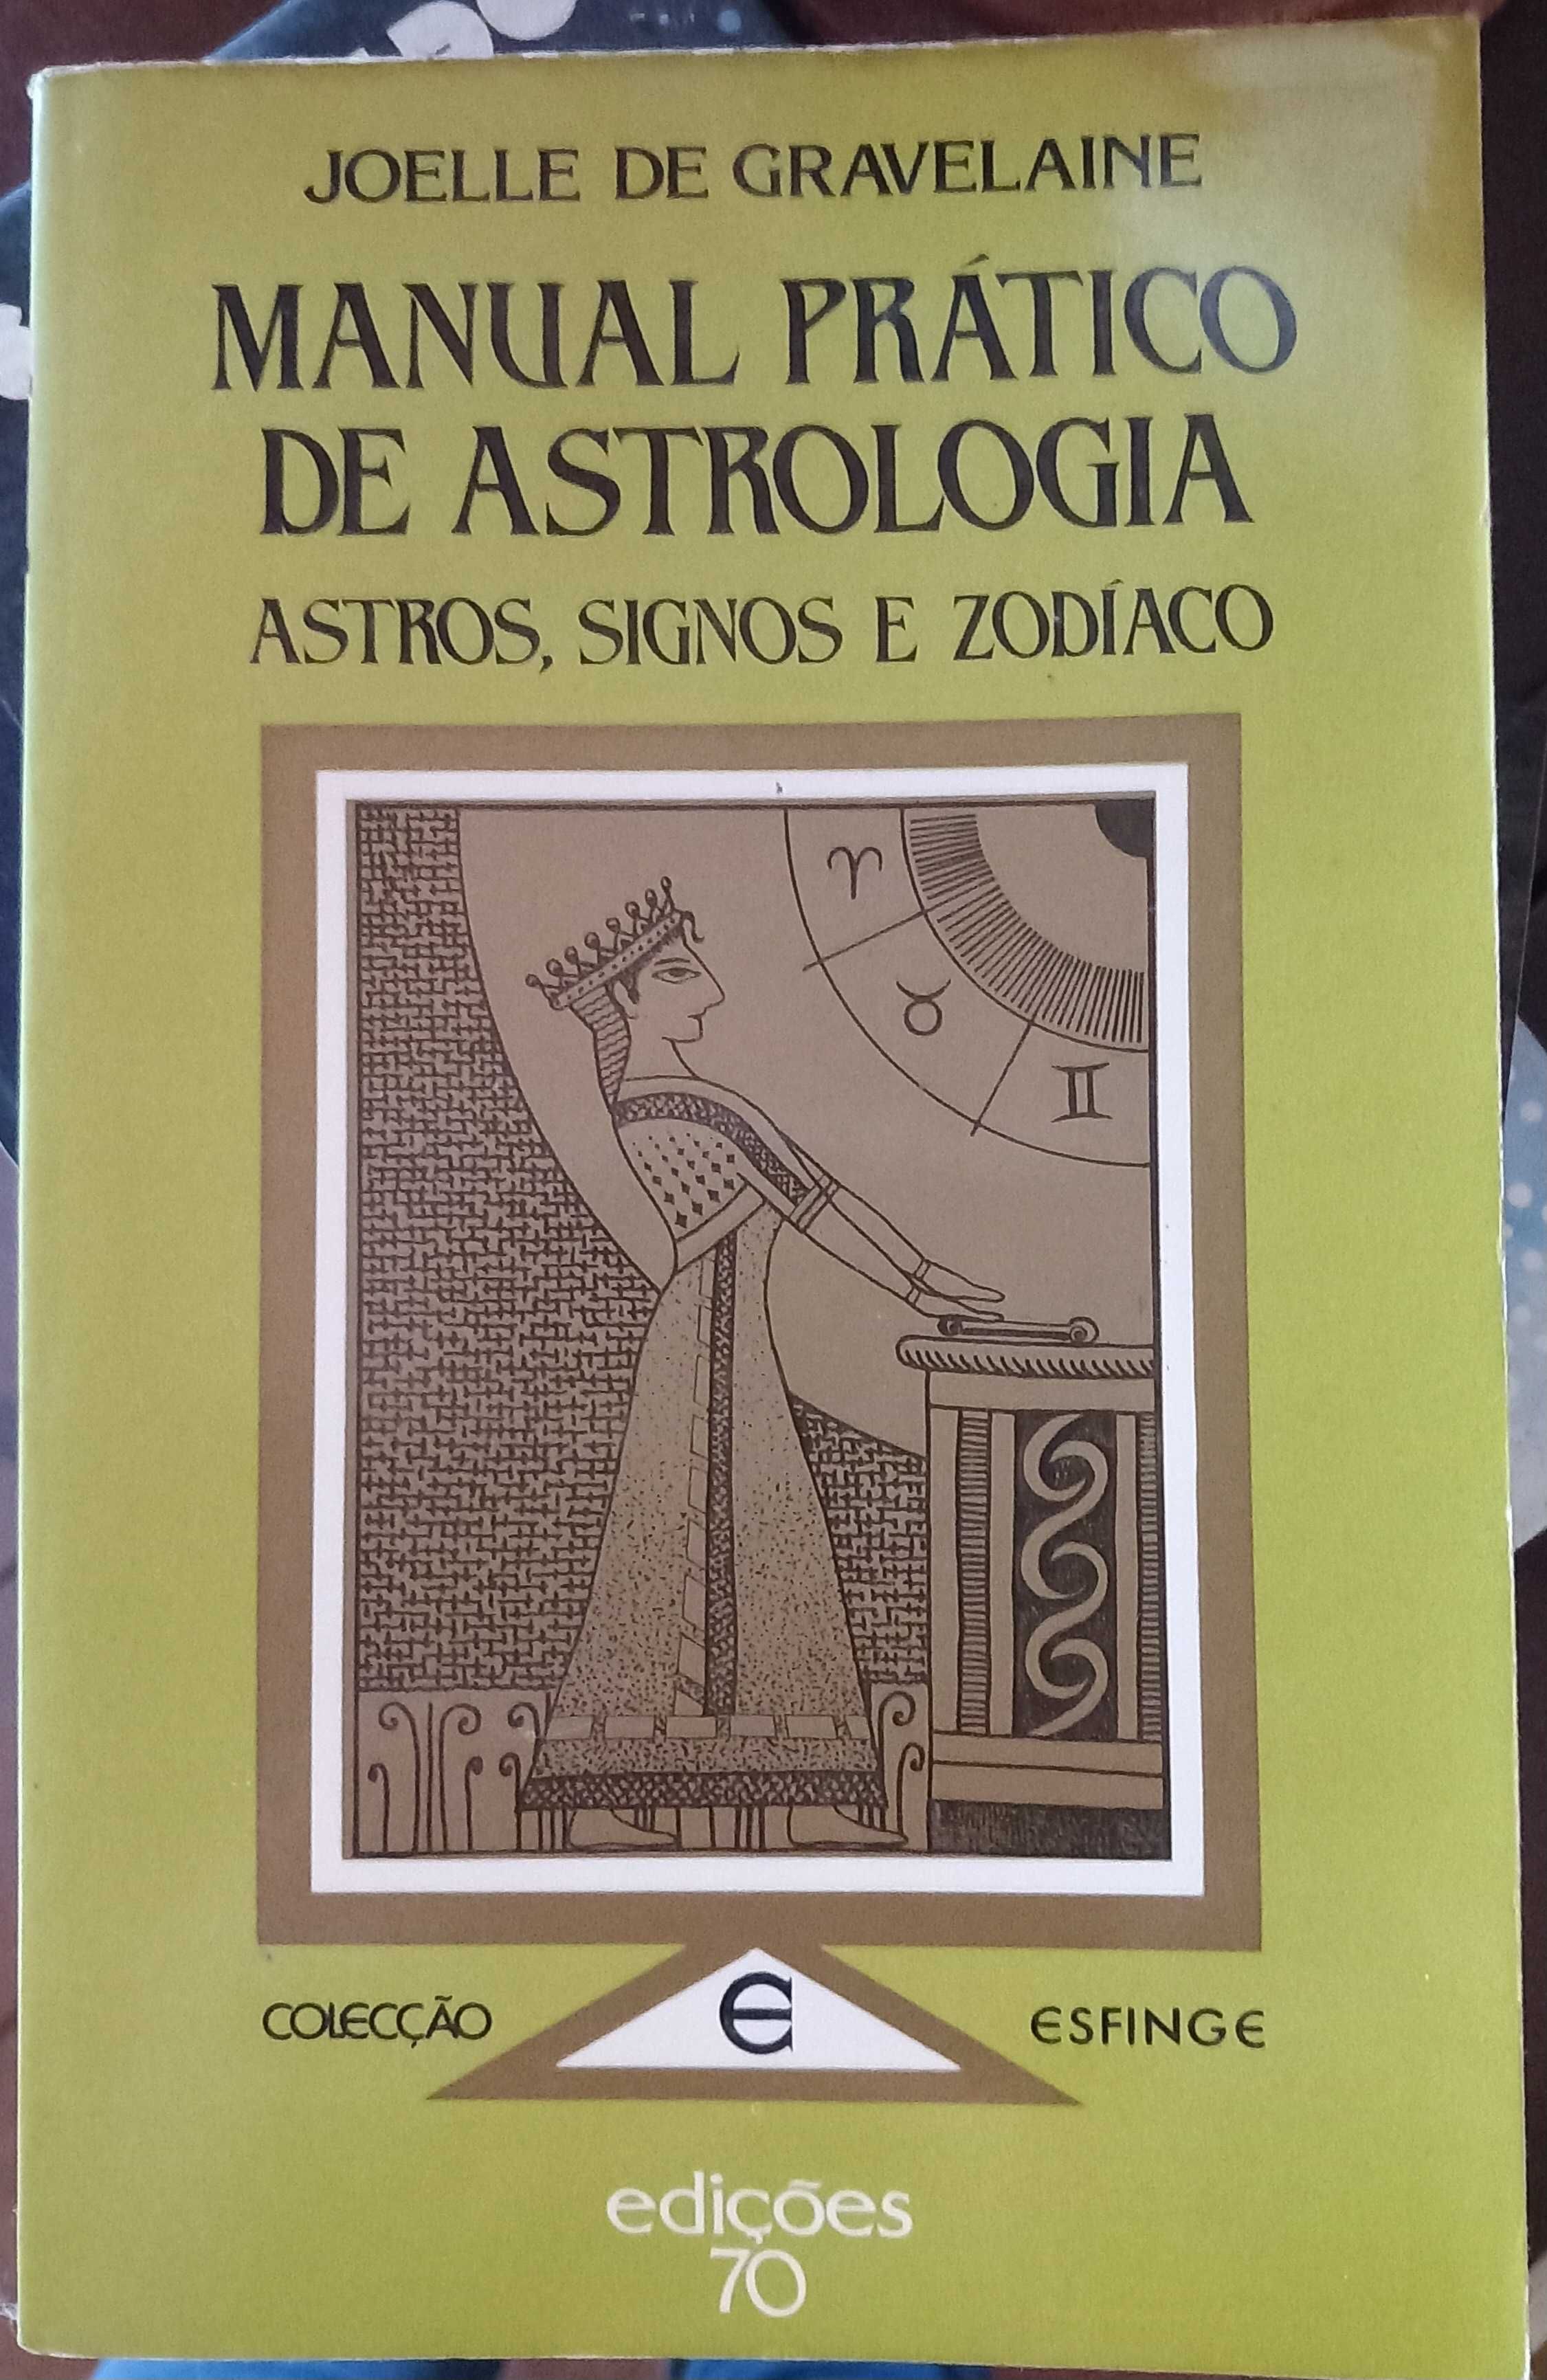 Livros - Astrologia desde 5€ - portes incluídos